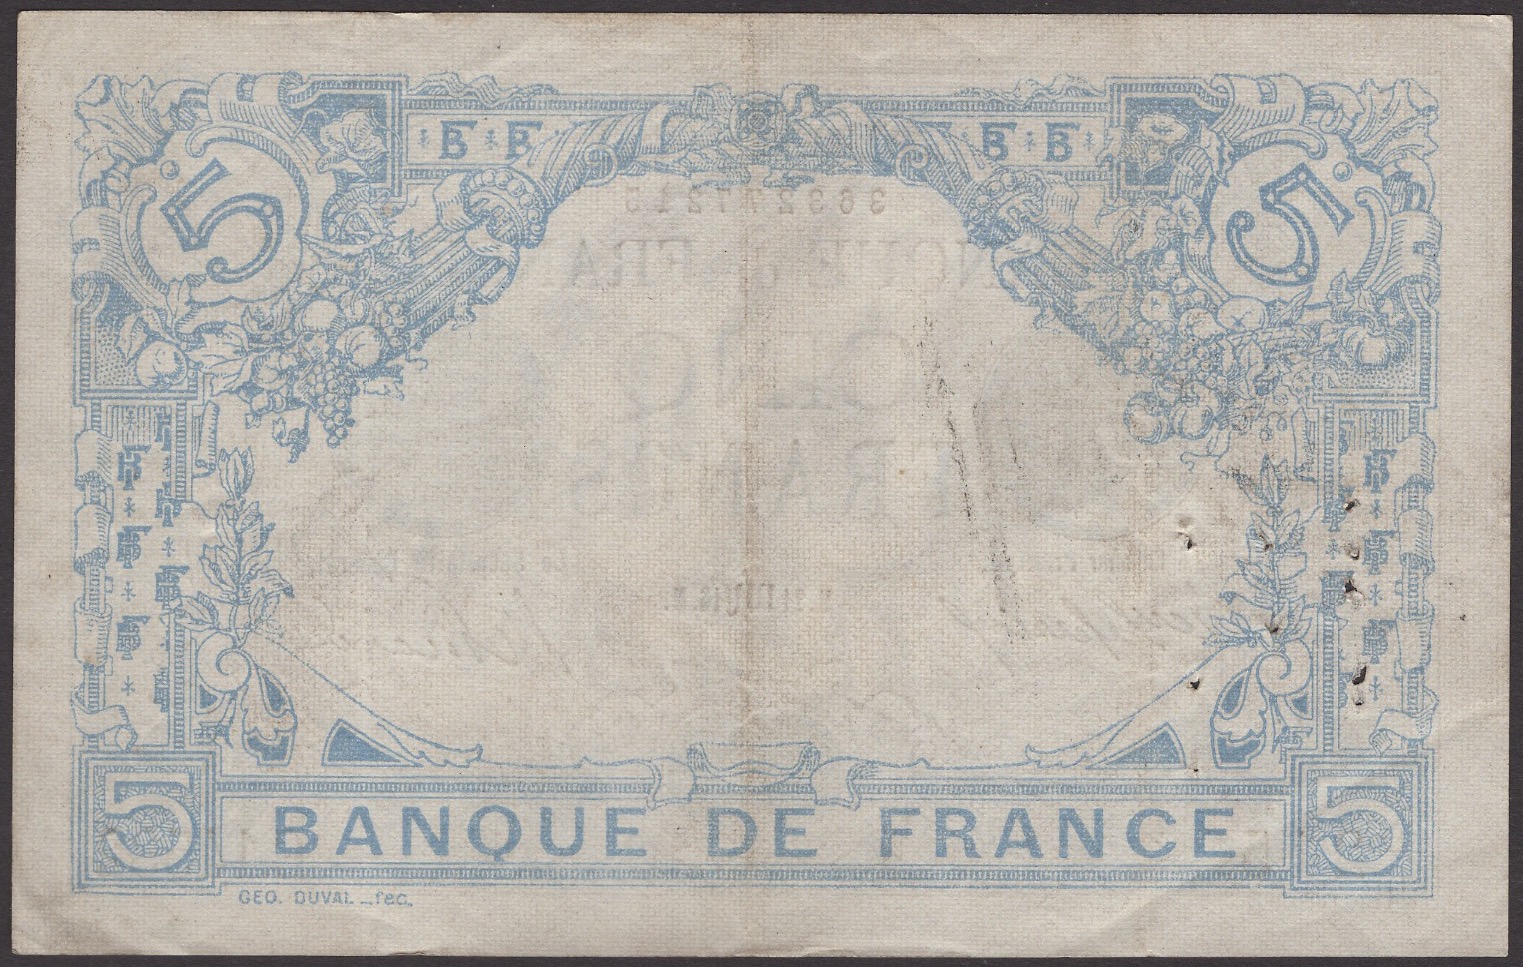 Banque de France, 5 Francs, 21 November 1916, serial number C.14532 215, multiple pinholes,... - Image 2 of 2